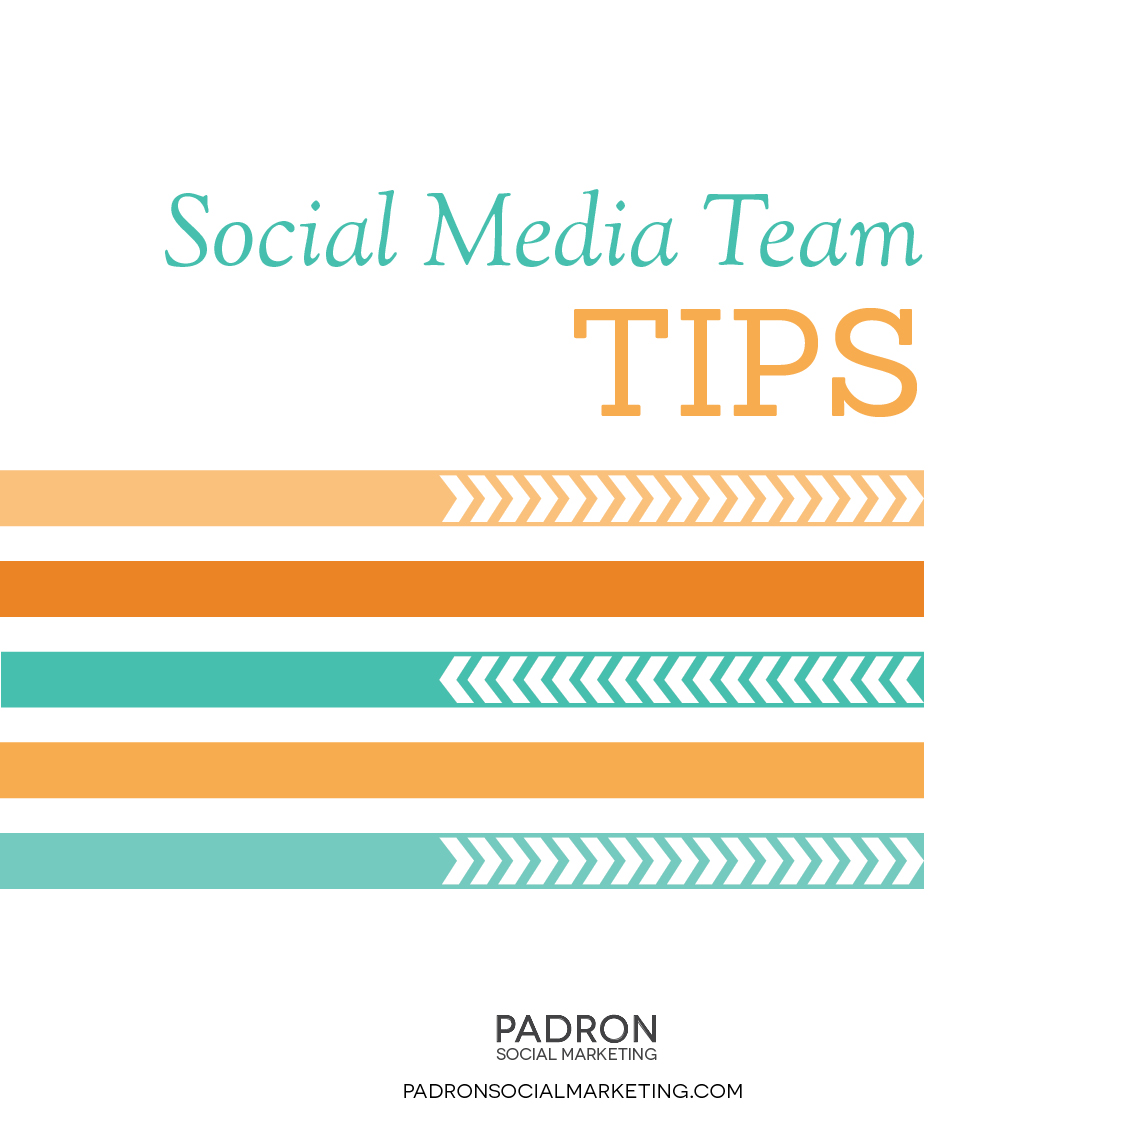 Social Media Team Tips